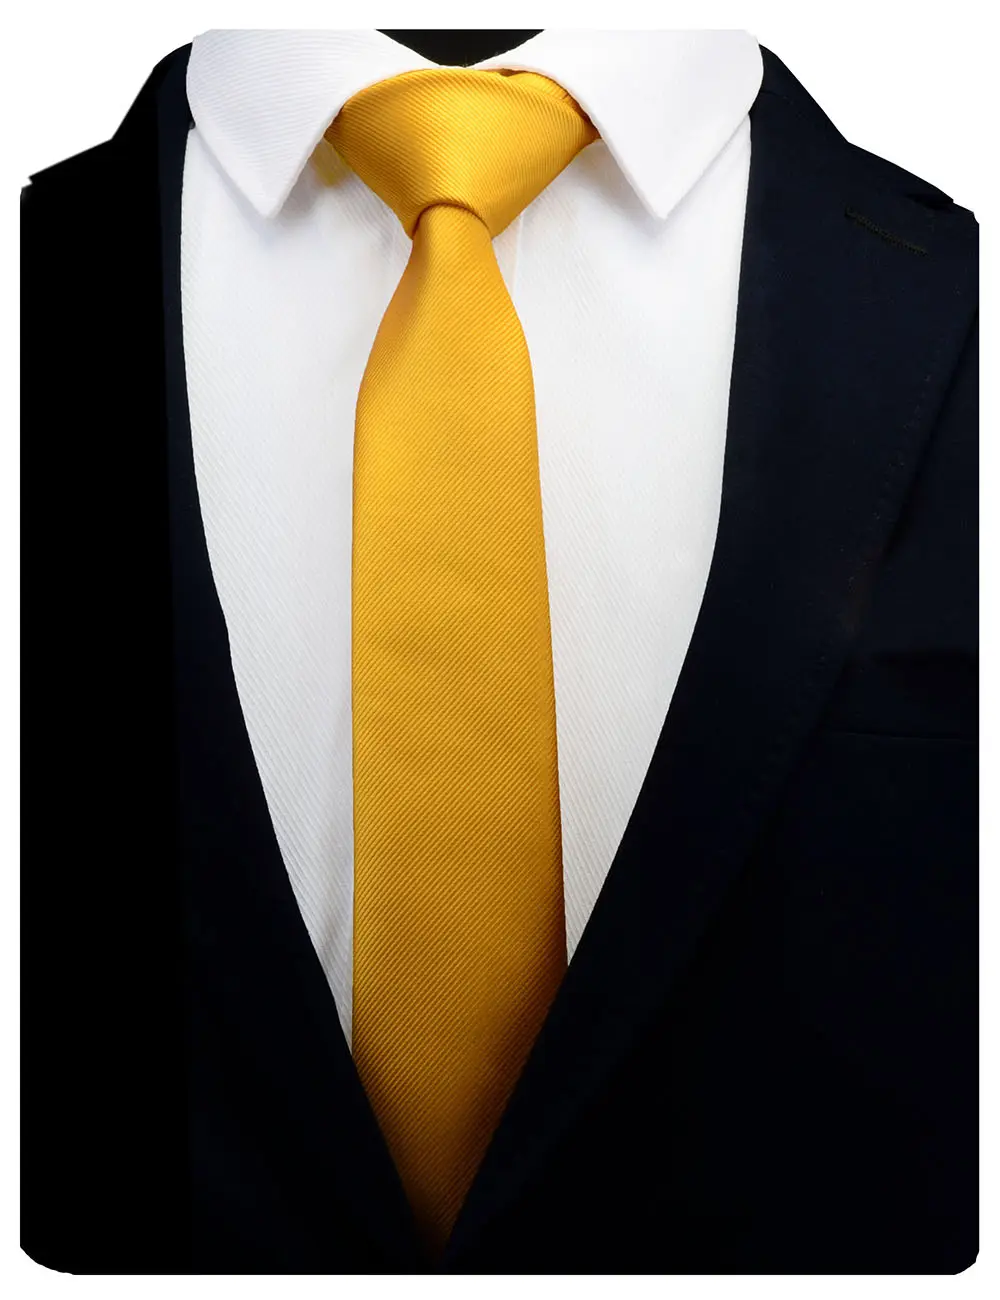 Erkekler için ipek kravat düz renk ince 6cm adaçayı yeşil kravat Polyester dar Cravat mavi mor altın pembe resmi moda bağları